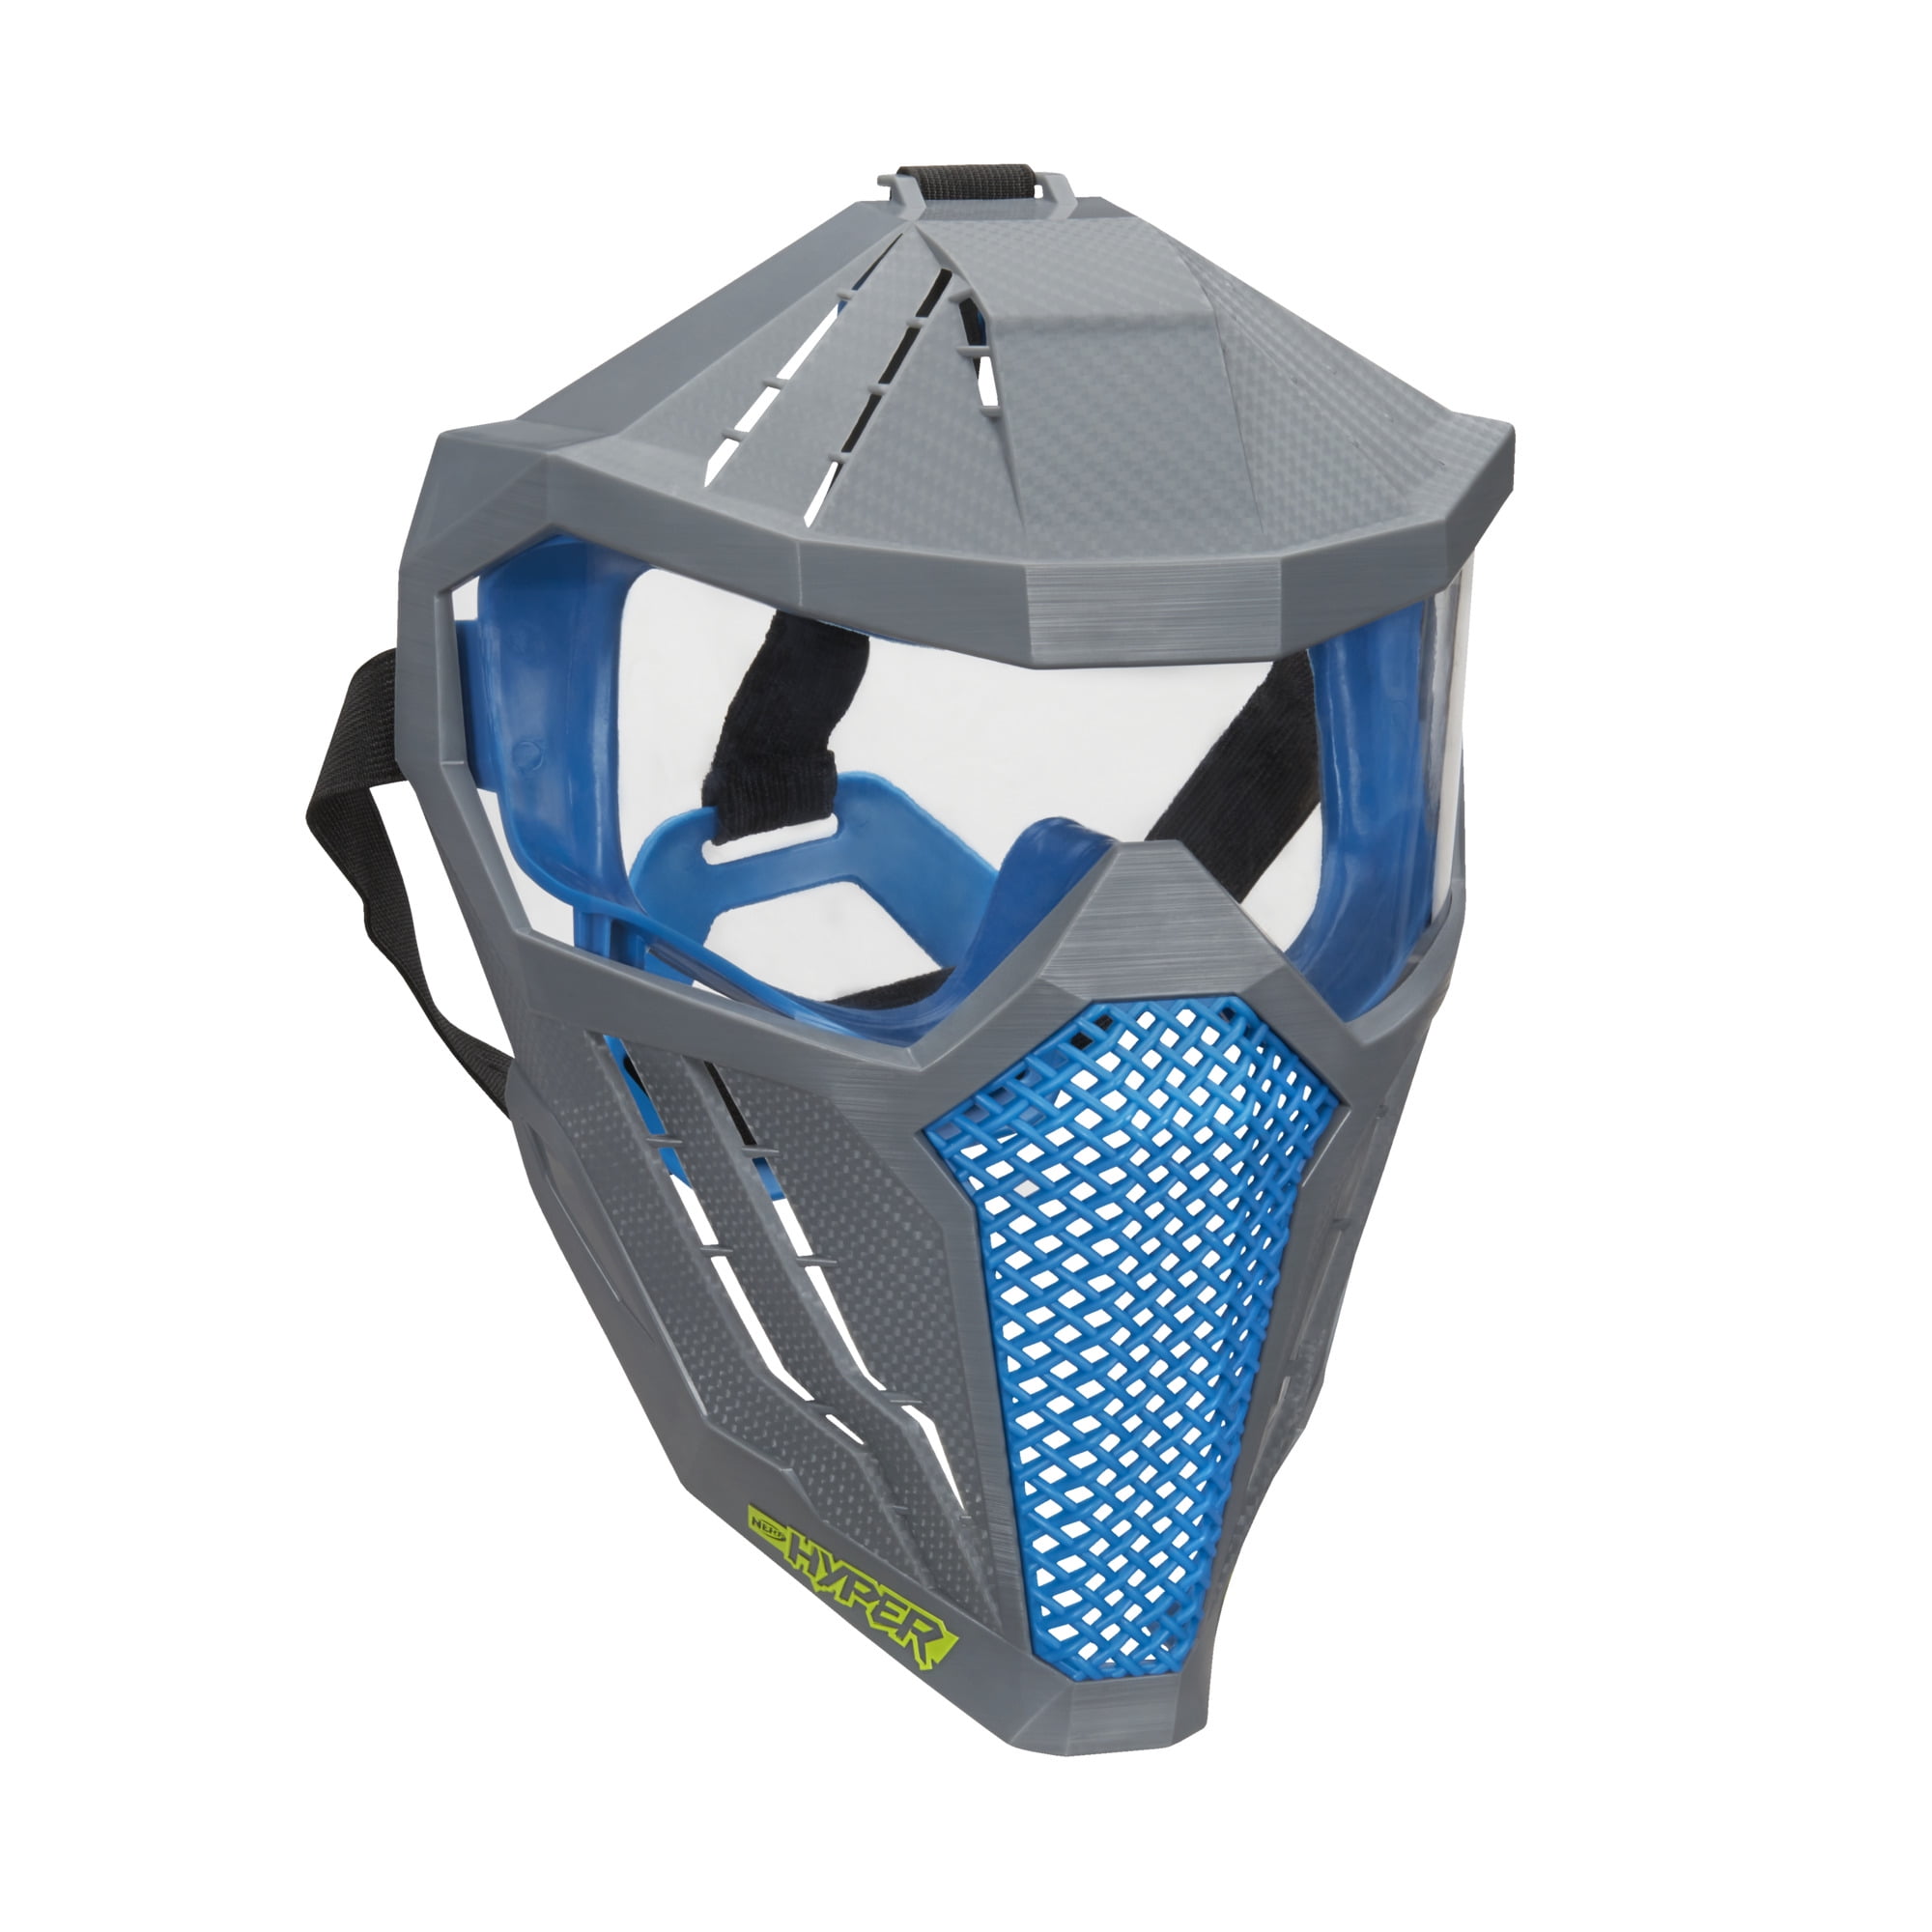 Nerf Hyper Face Mask, Breathable Design, Adjustable Head Strap, Blue Team - Walmart.com